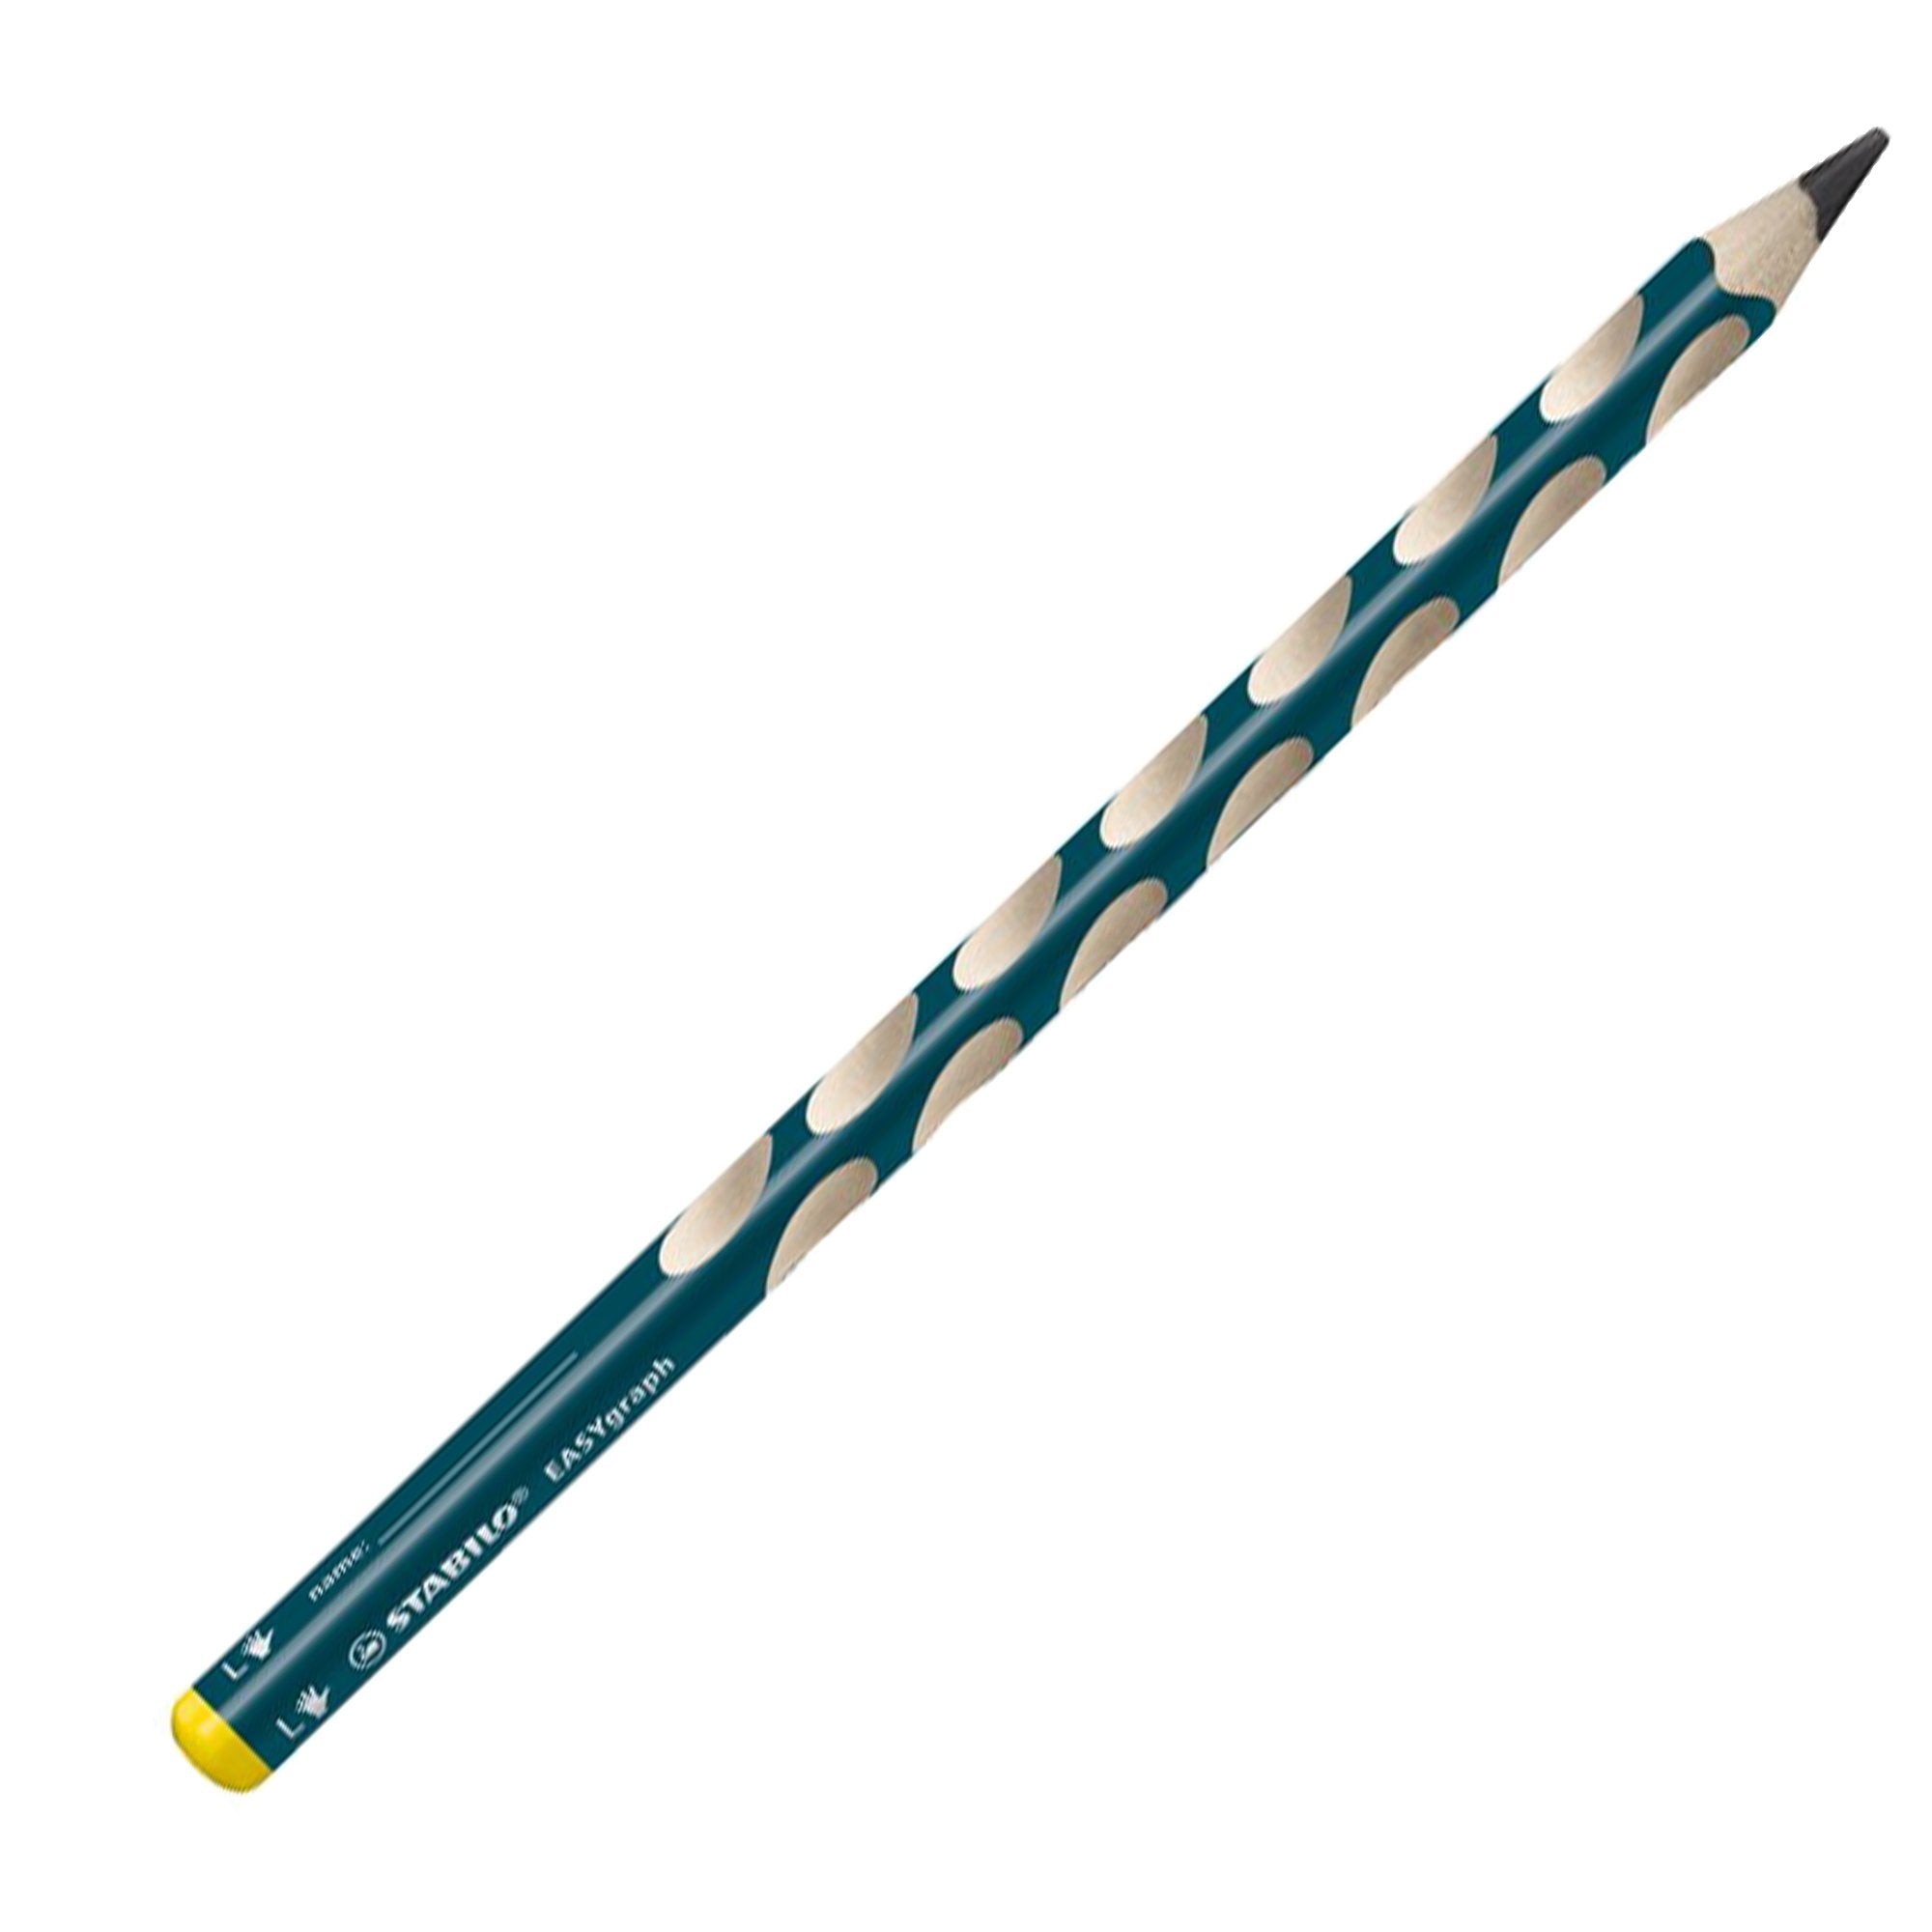 stabilo-astuccio-6-matite-grafite-easygraph-hb-mancini